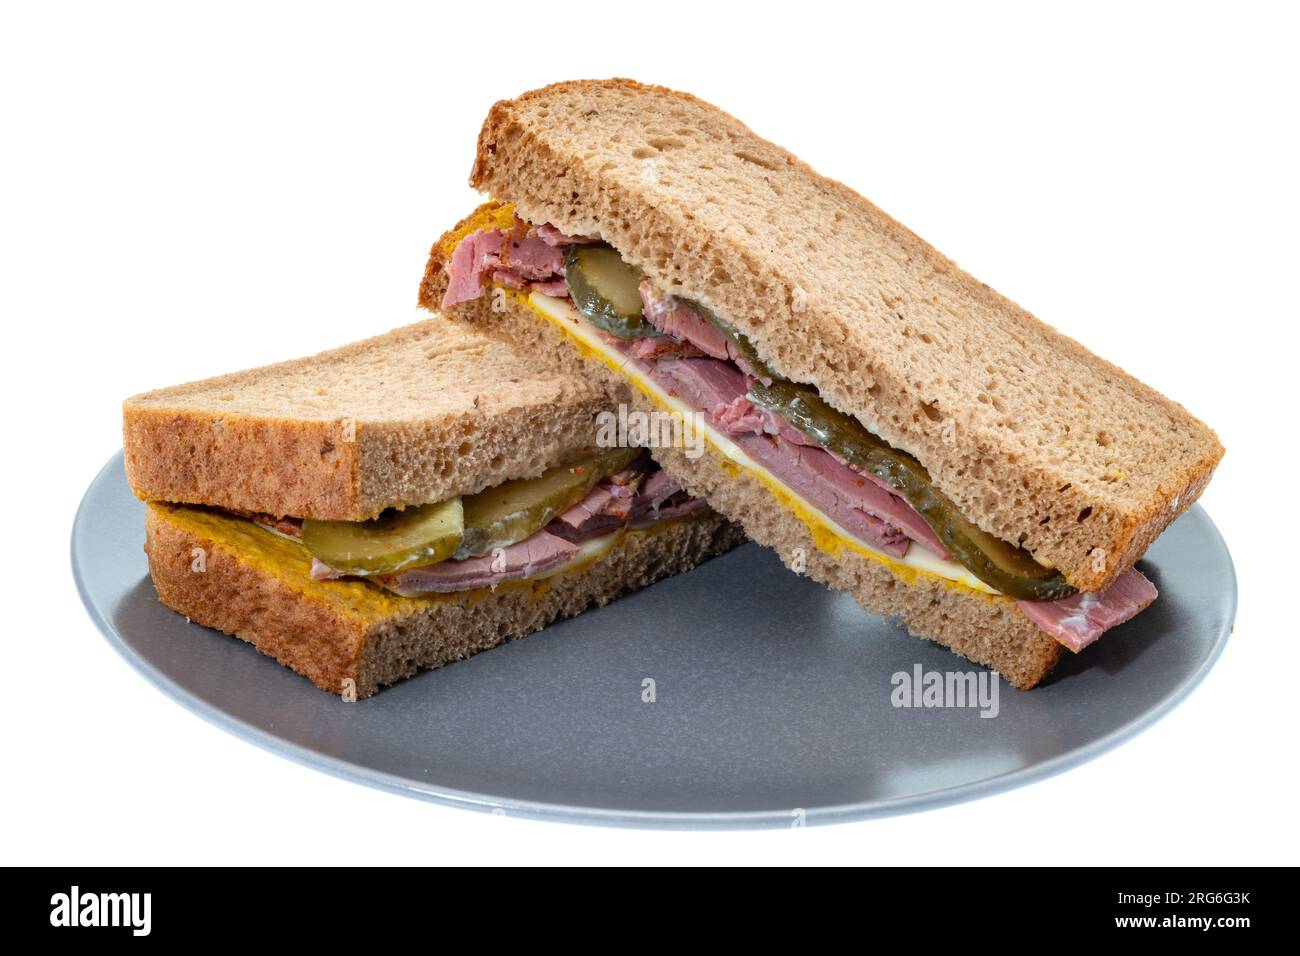 Sel boeuf ou Pastrami avec Gherkins et sandwich au fromage - fond blanc Banque D'Images